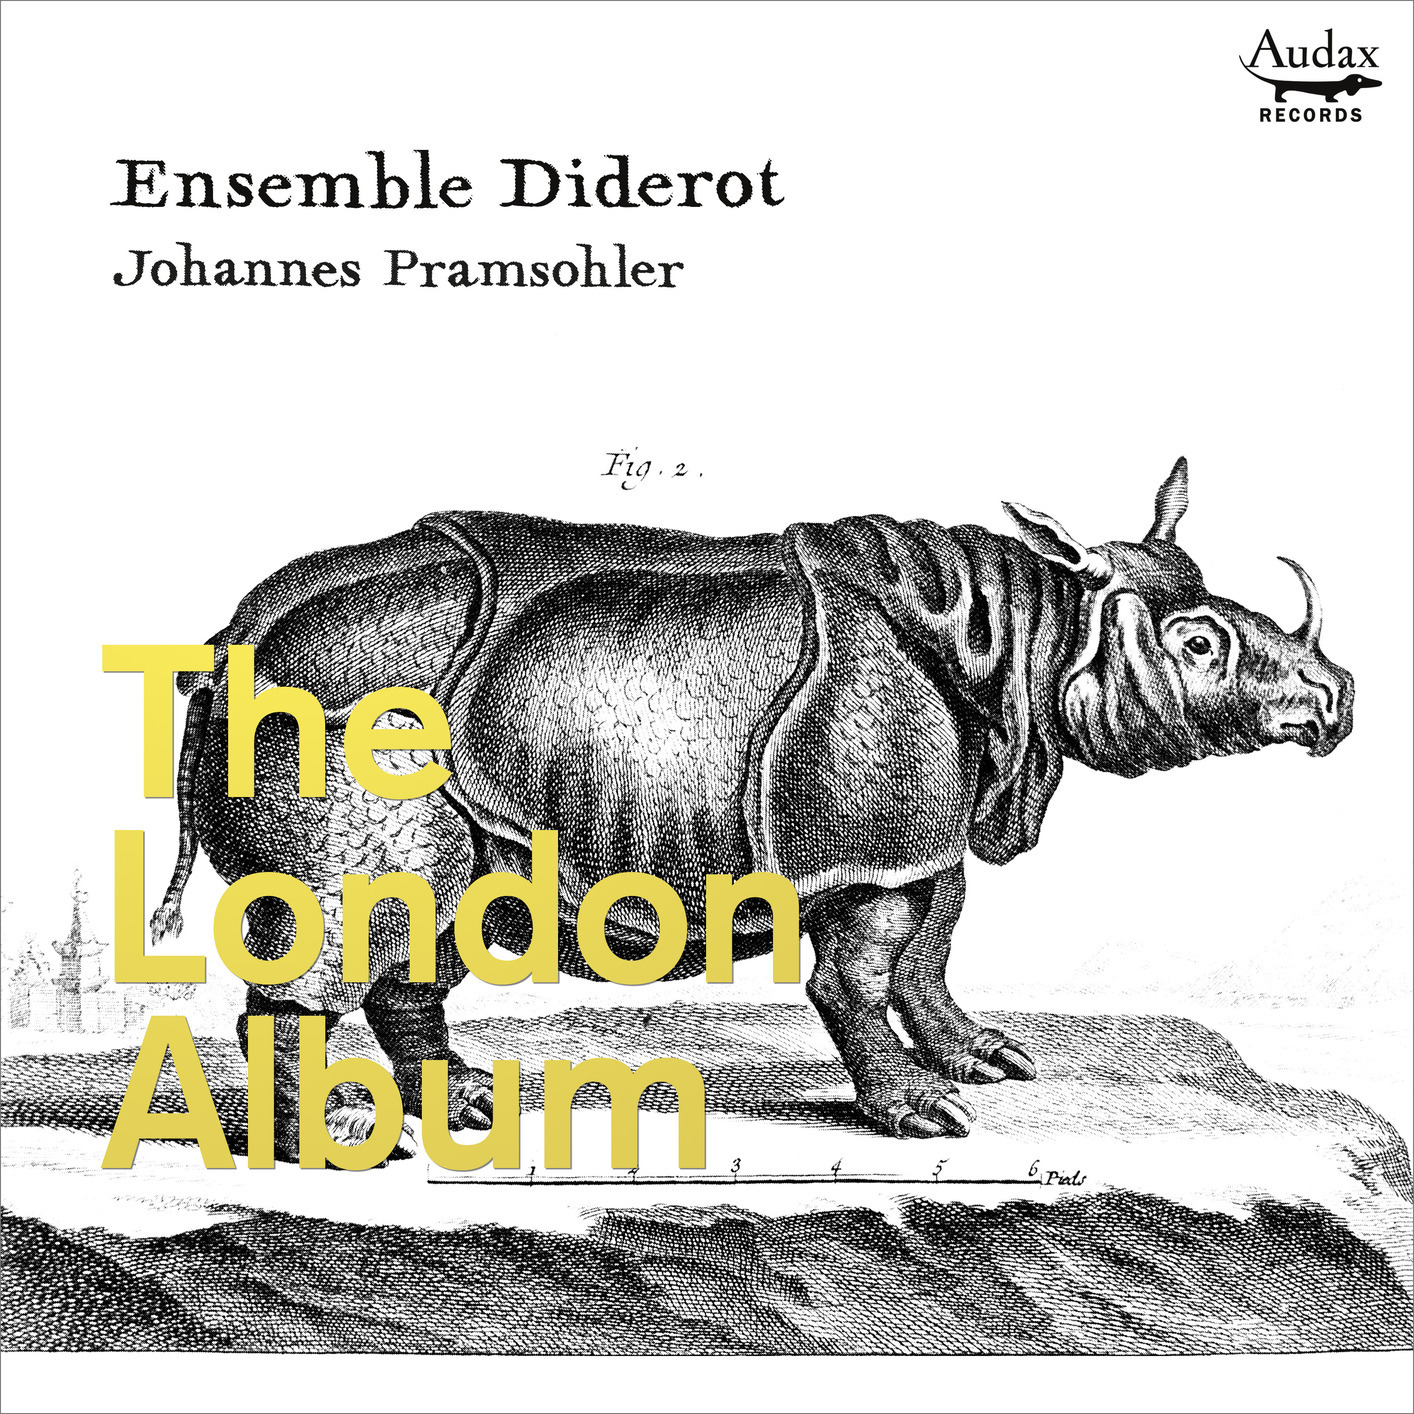 Ensemble Diderot & Johannes Pramsohler - The London Album (2019) [FLAC 24bit/96kHz]